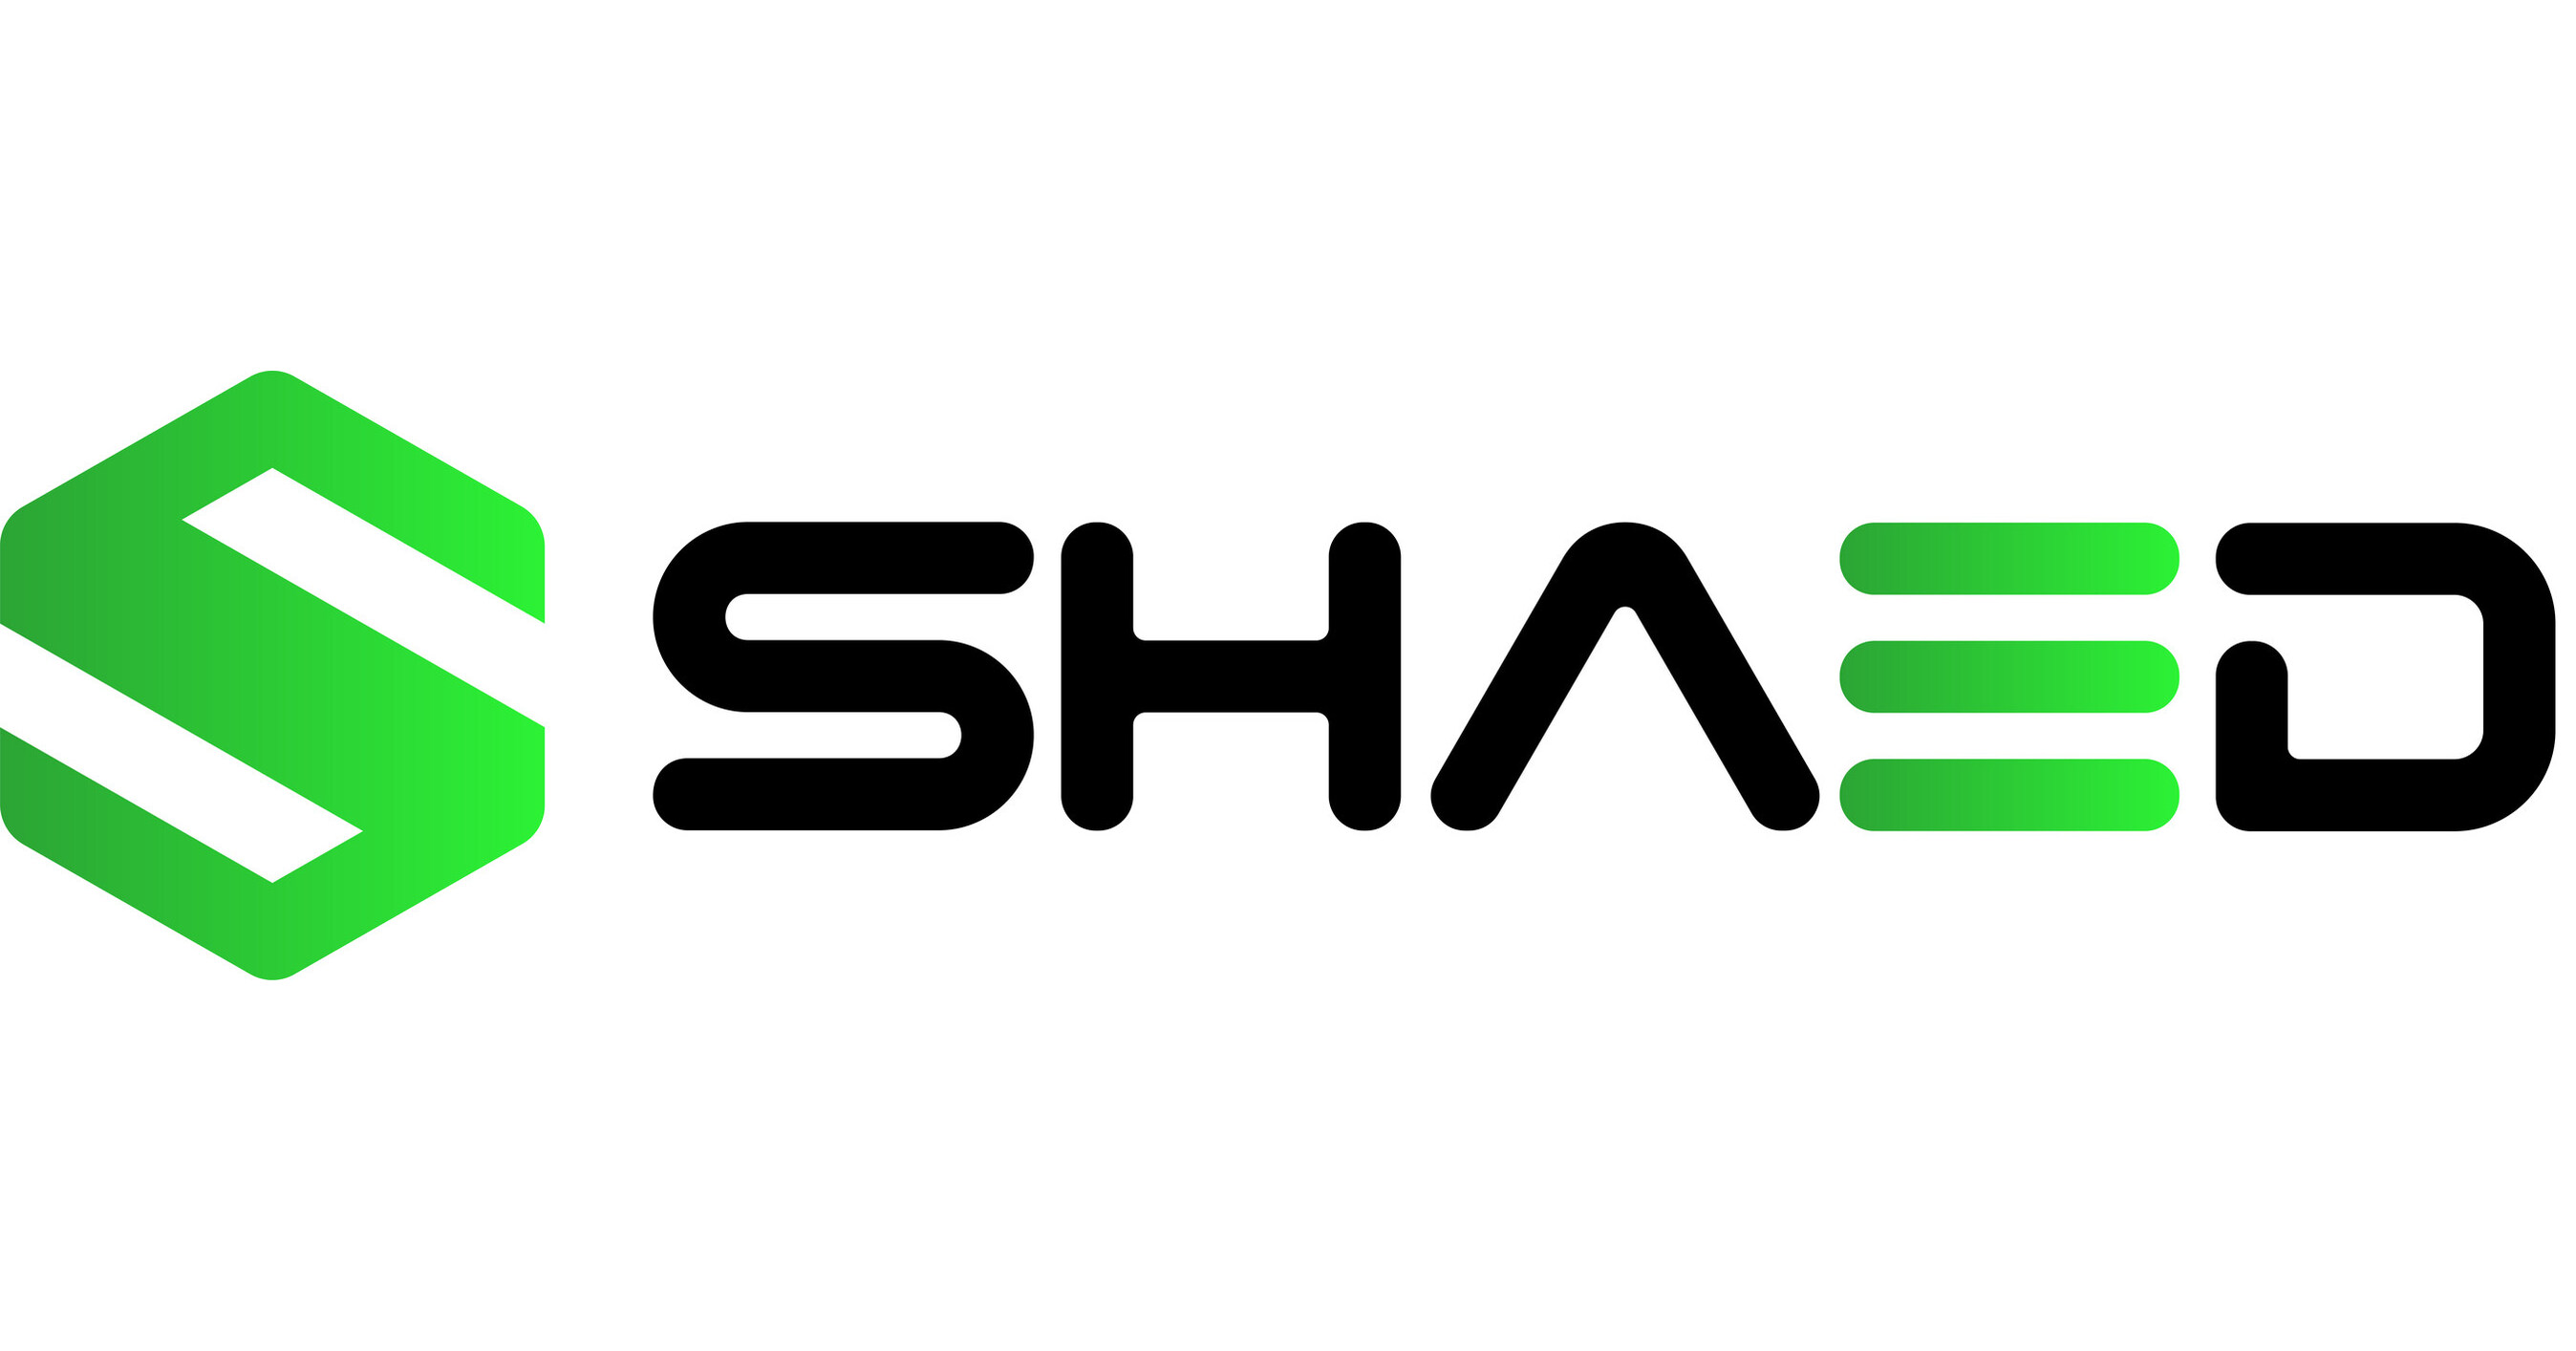 SHAED推出移动平台，获得570万美元种子资金支持